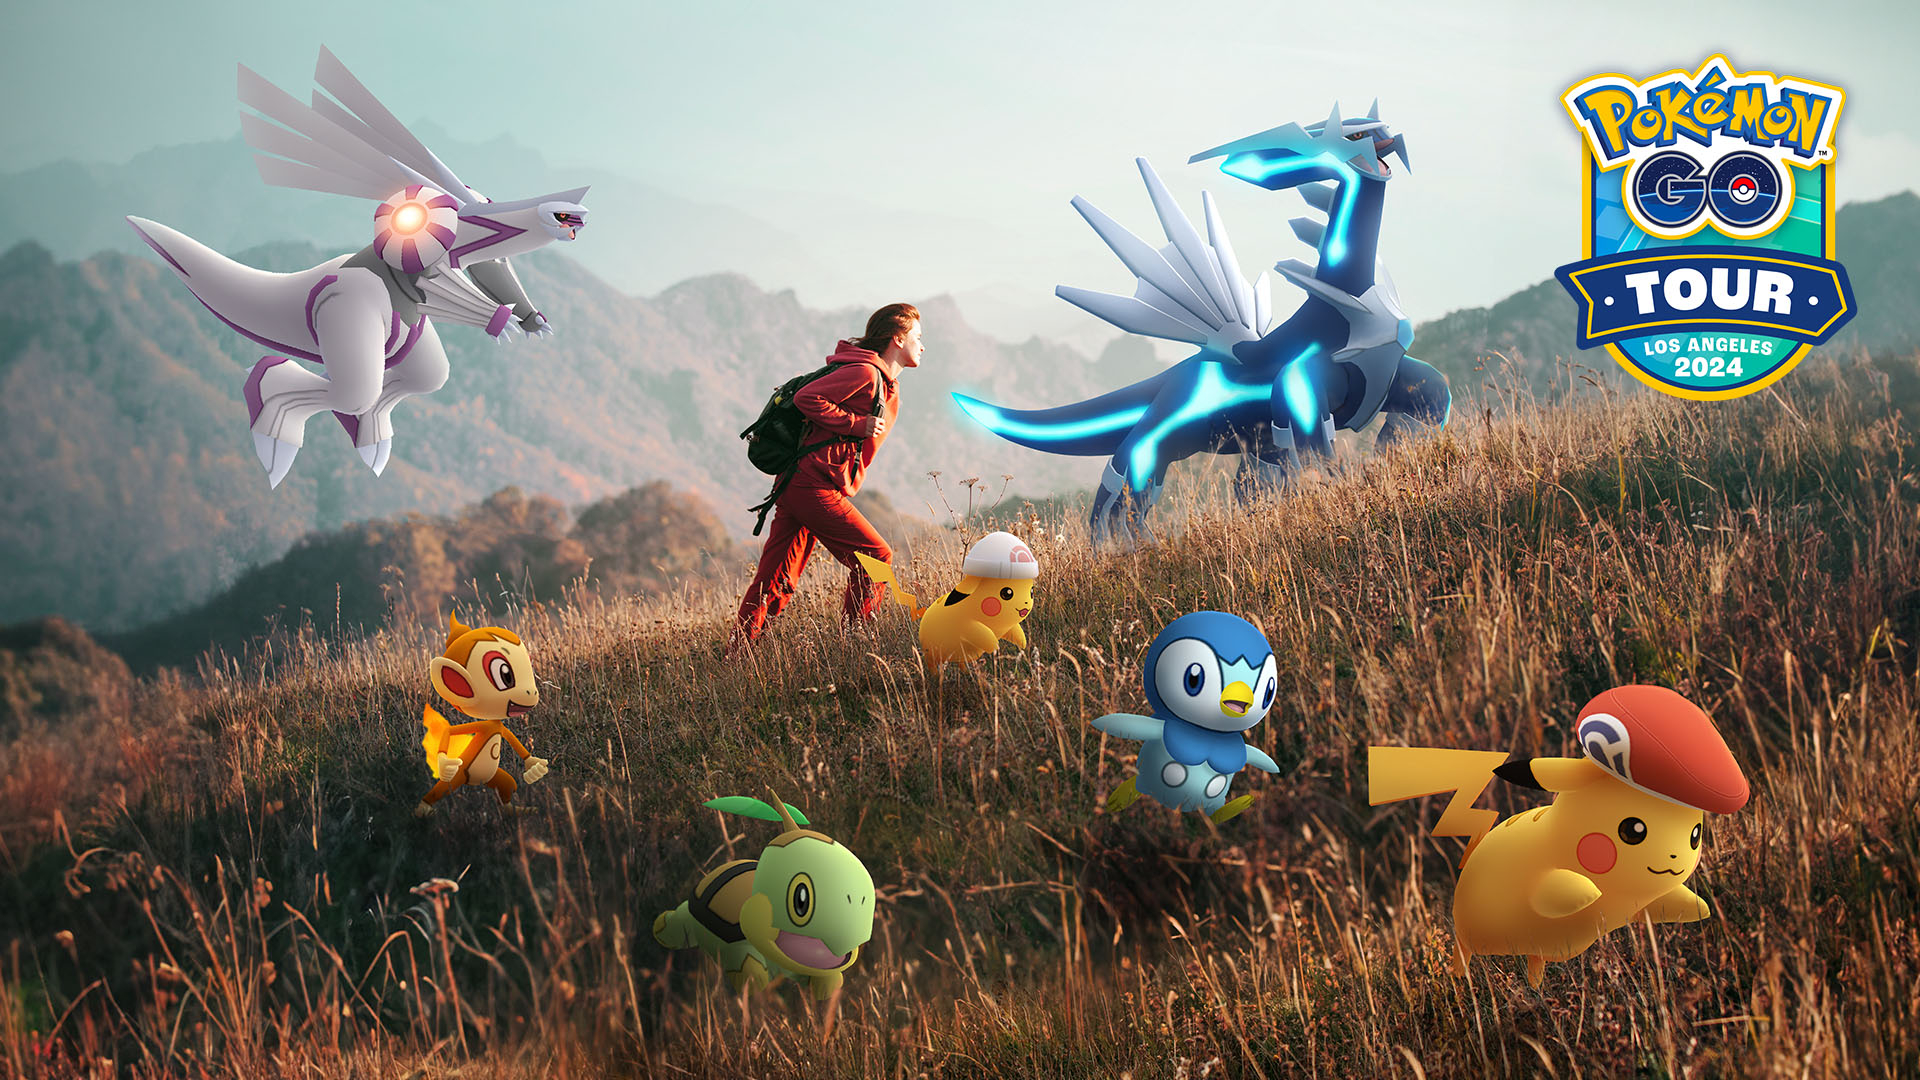 Pokémon GO Tour: Sinnoh Key Art